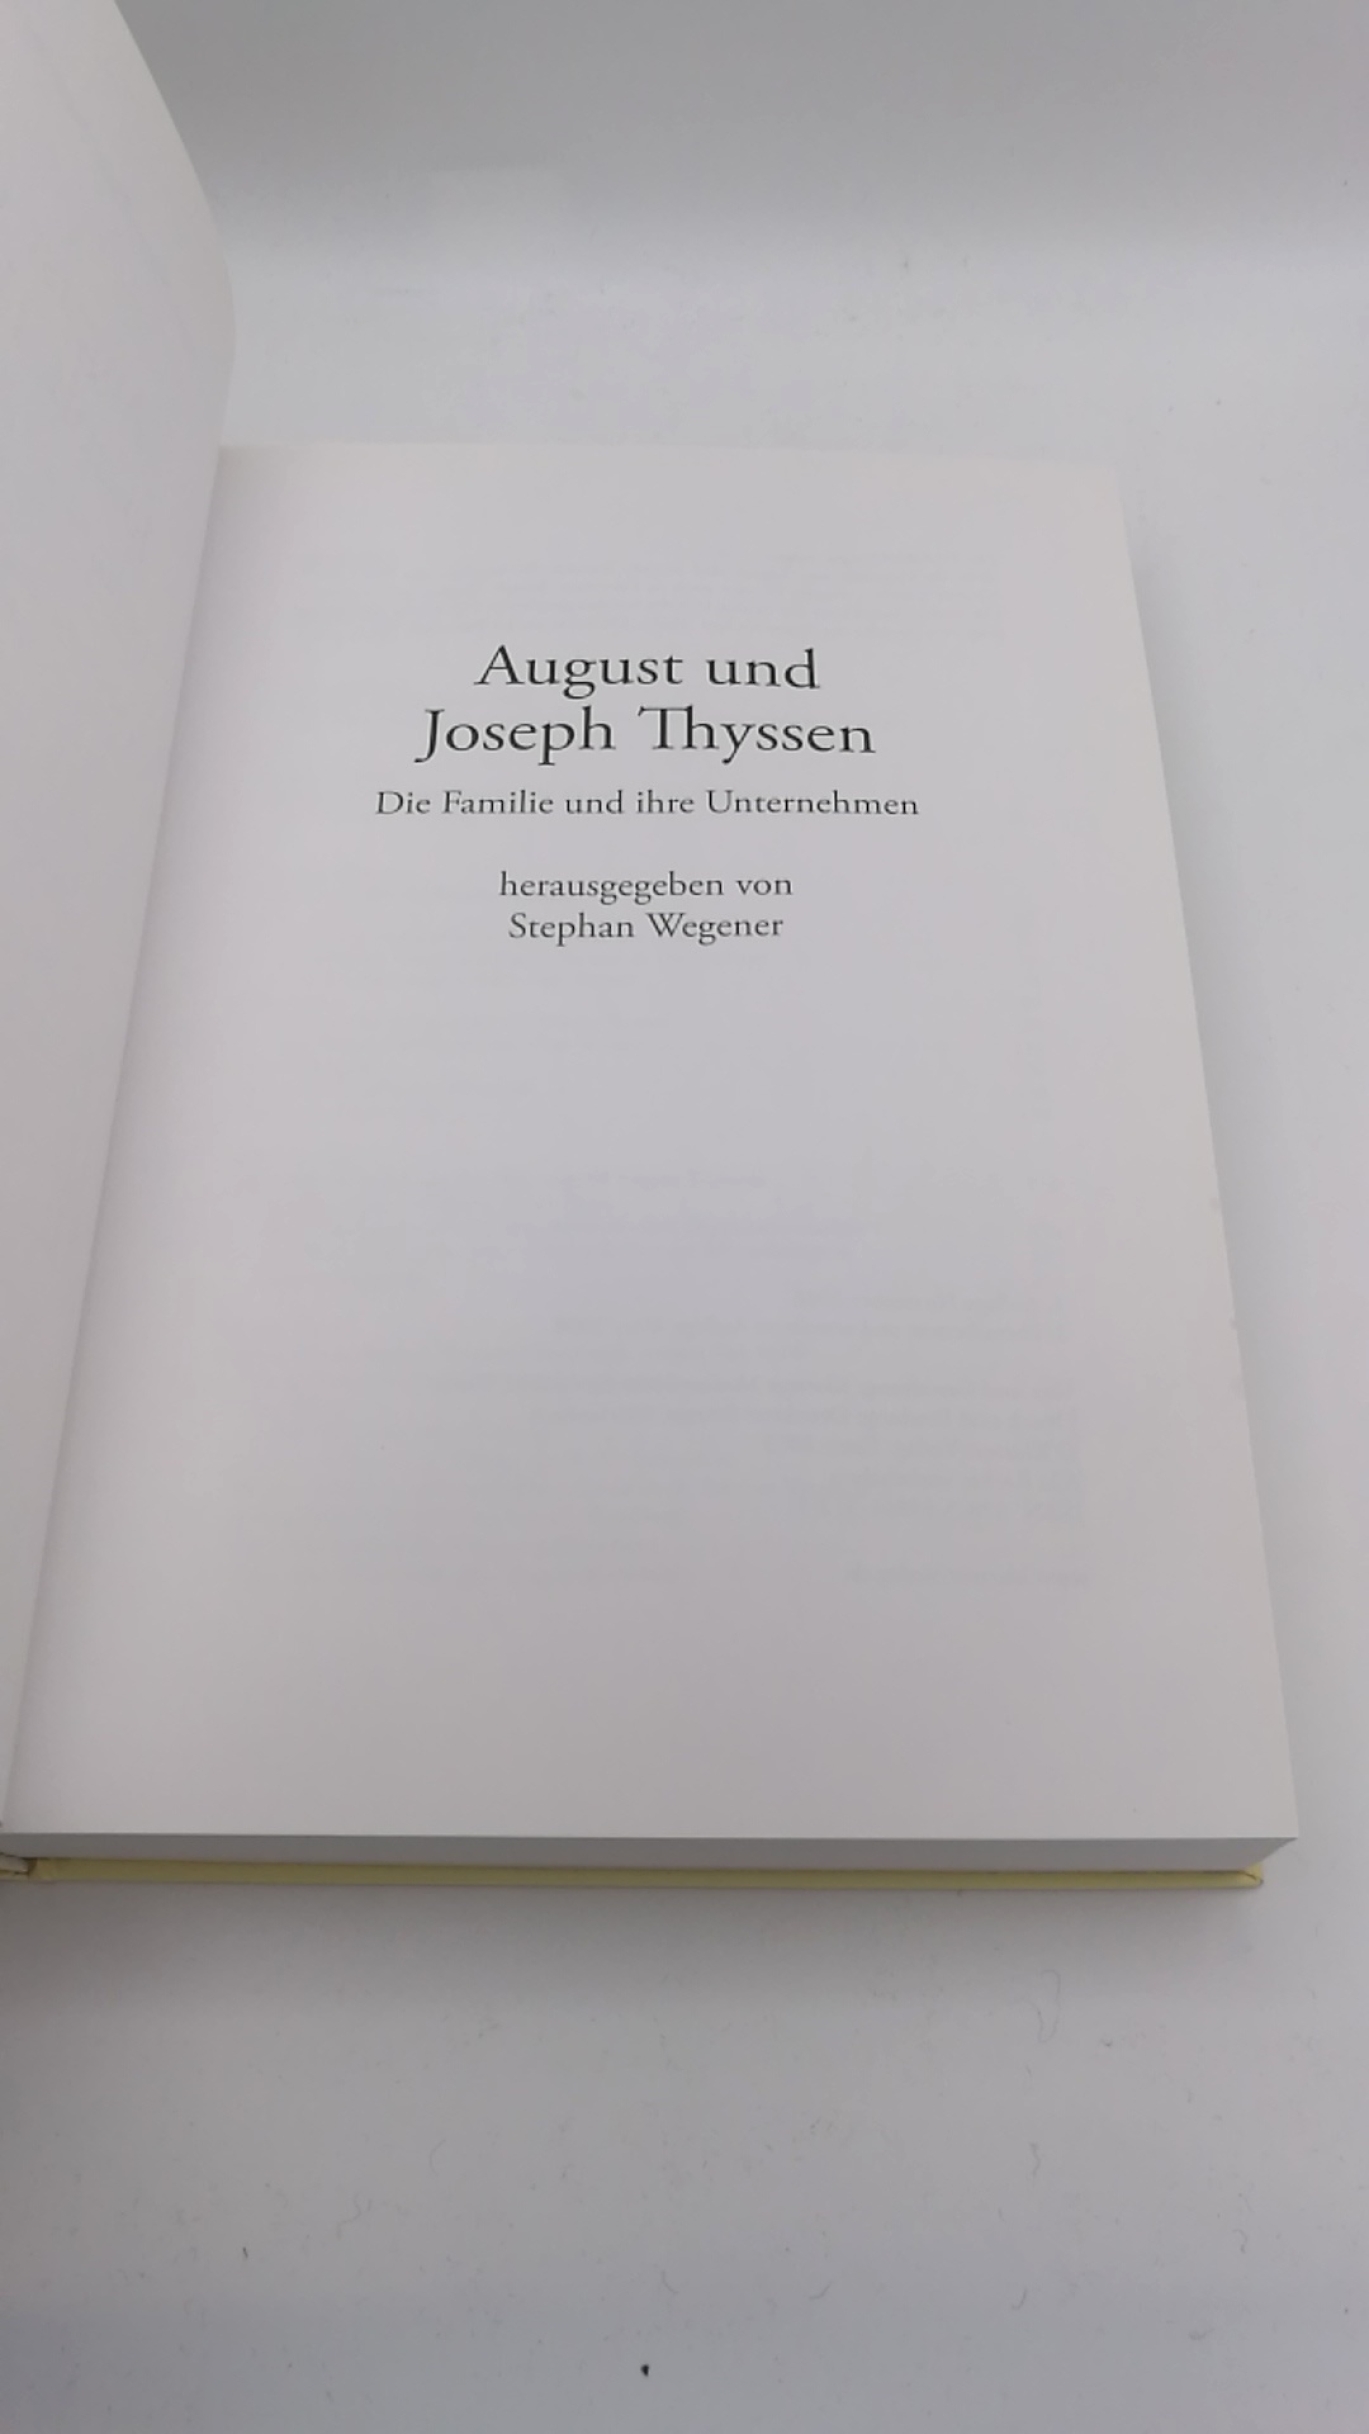 Wegener, Stephan (Herausgeber): August und Joseph Thyssen Die Familie und ihre Unternehmen